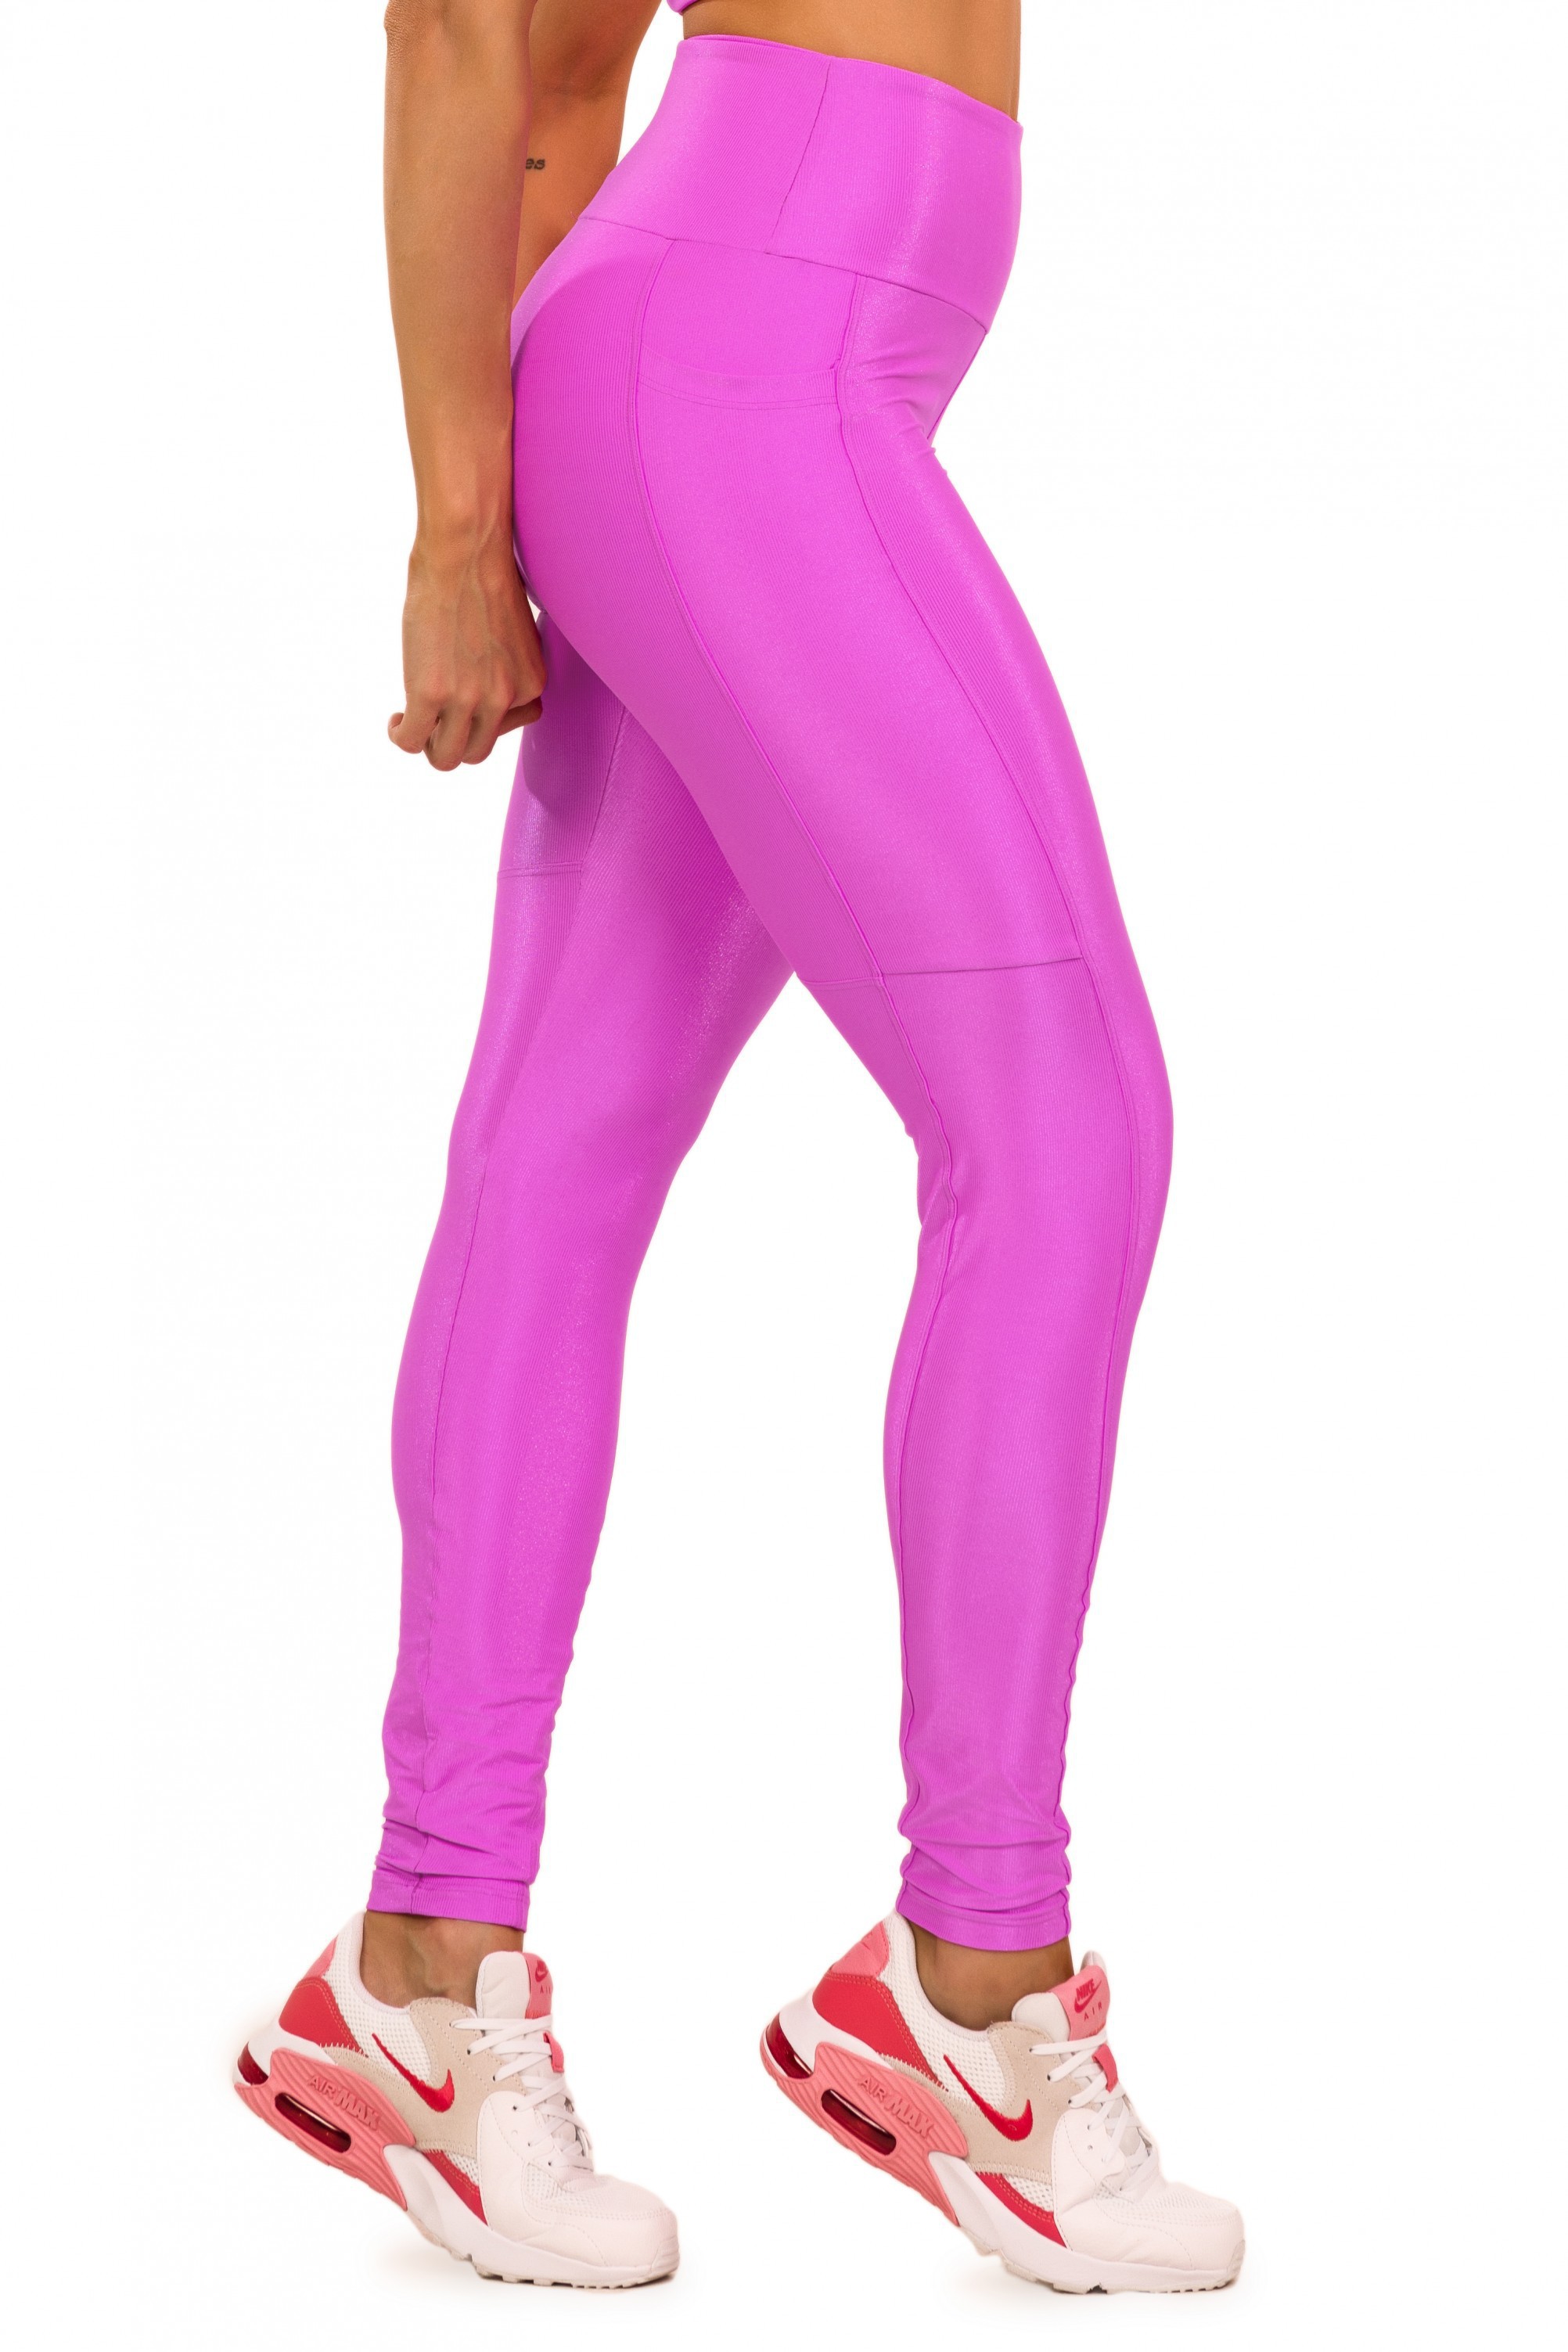 Legging Bright Microcanelada Pink com Bolso - Donna Carioca Moda Fitness